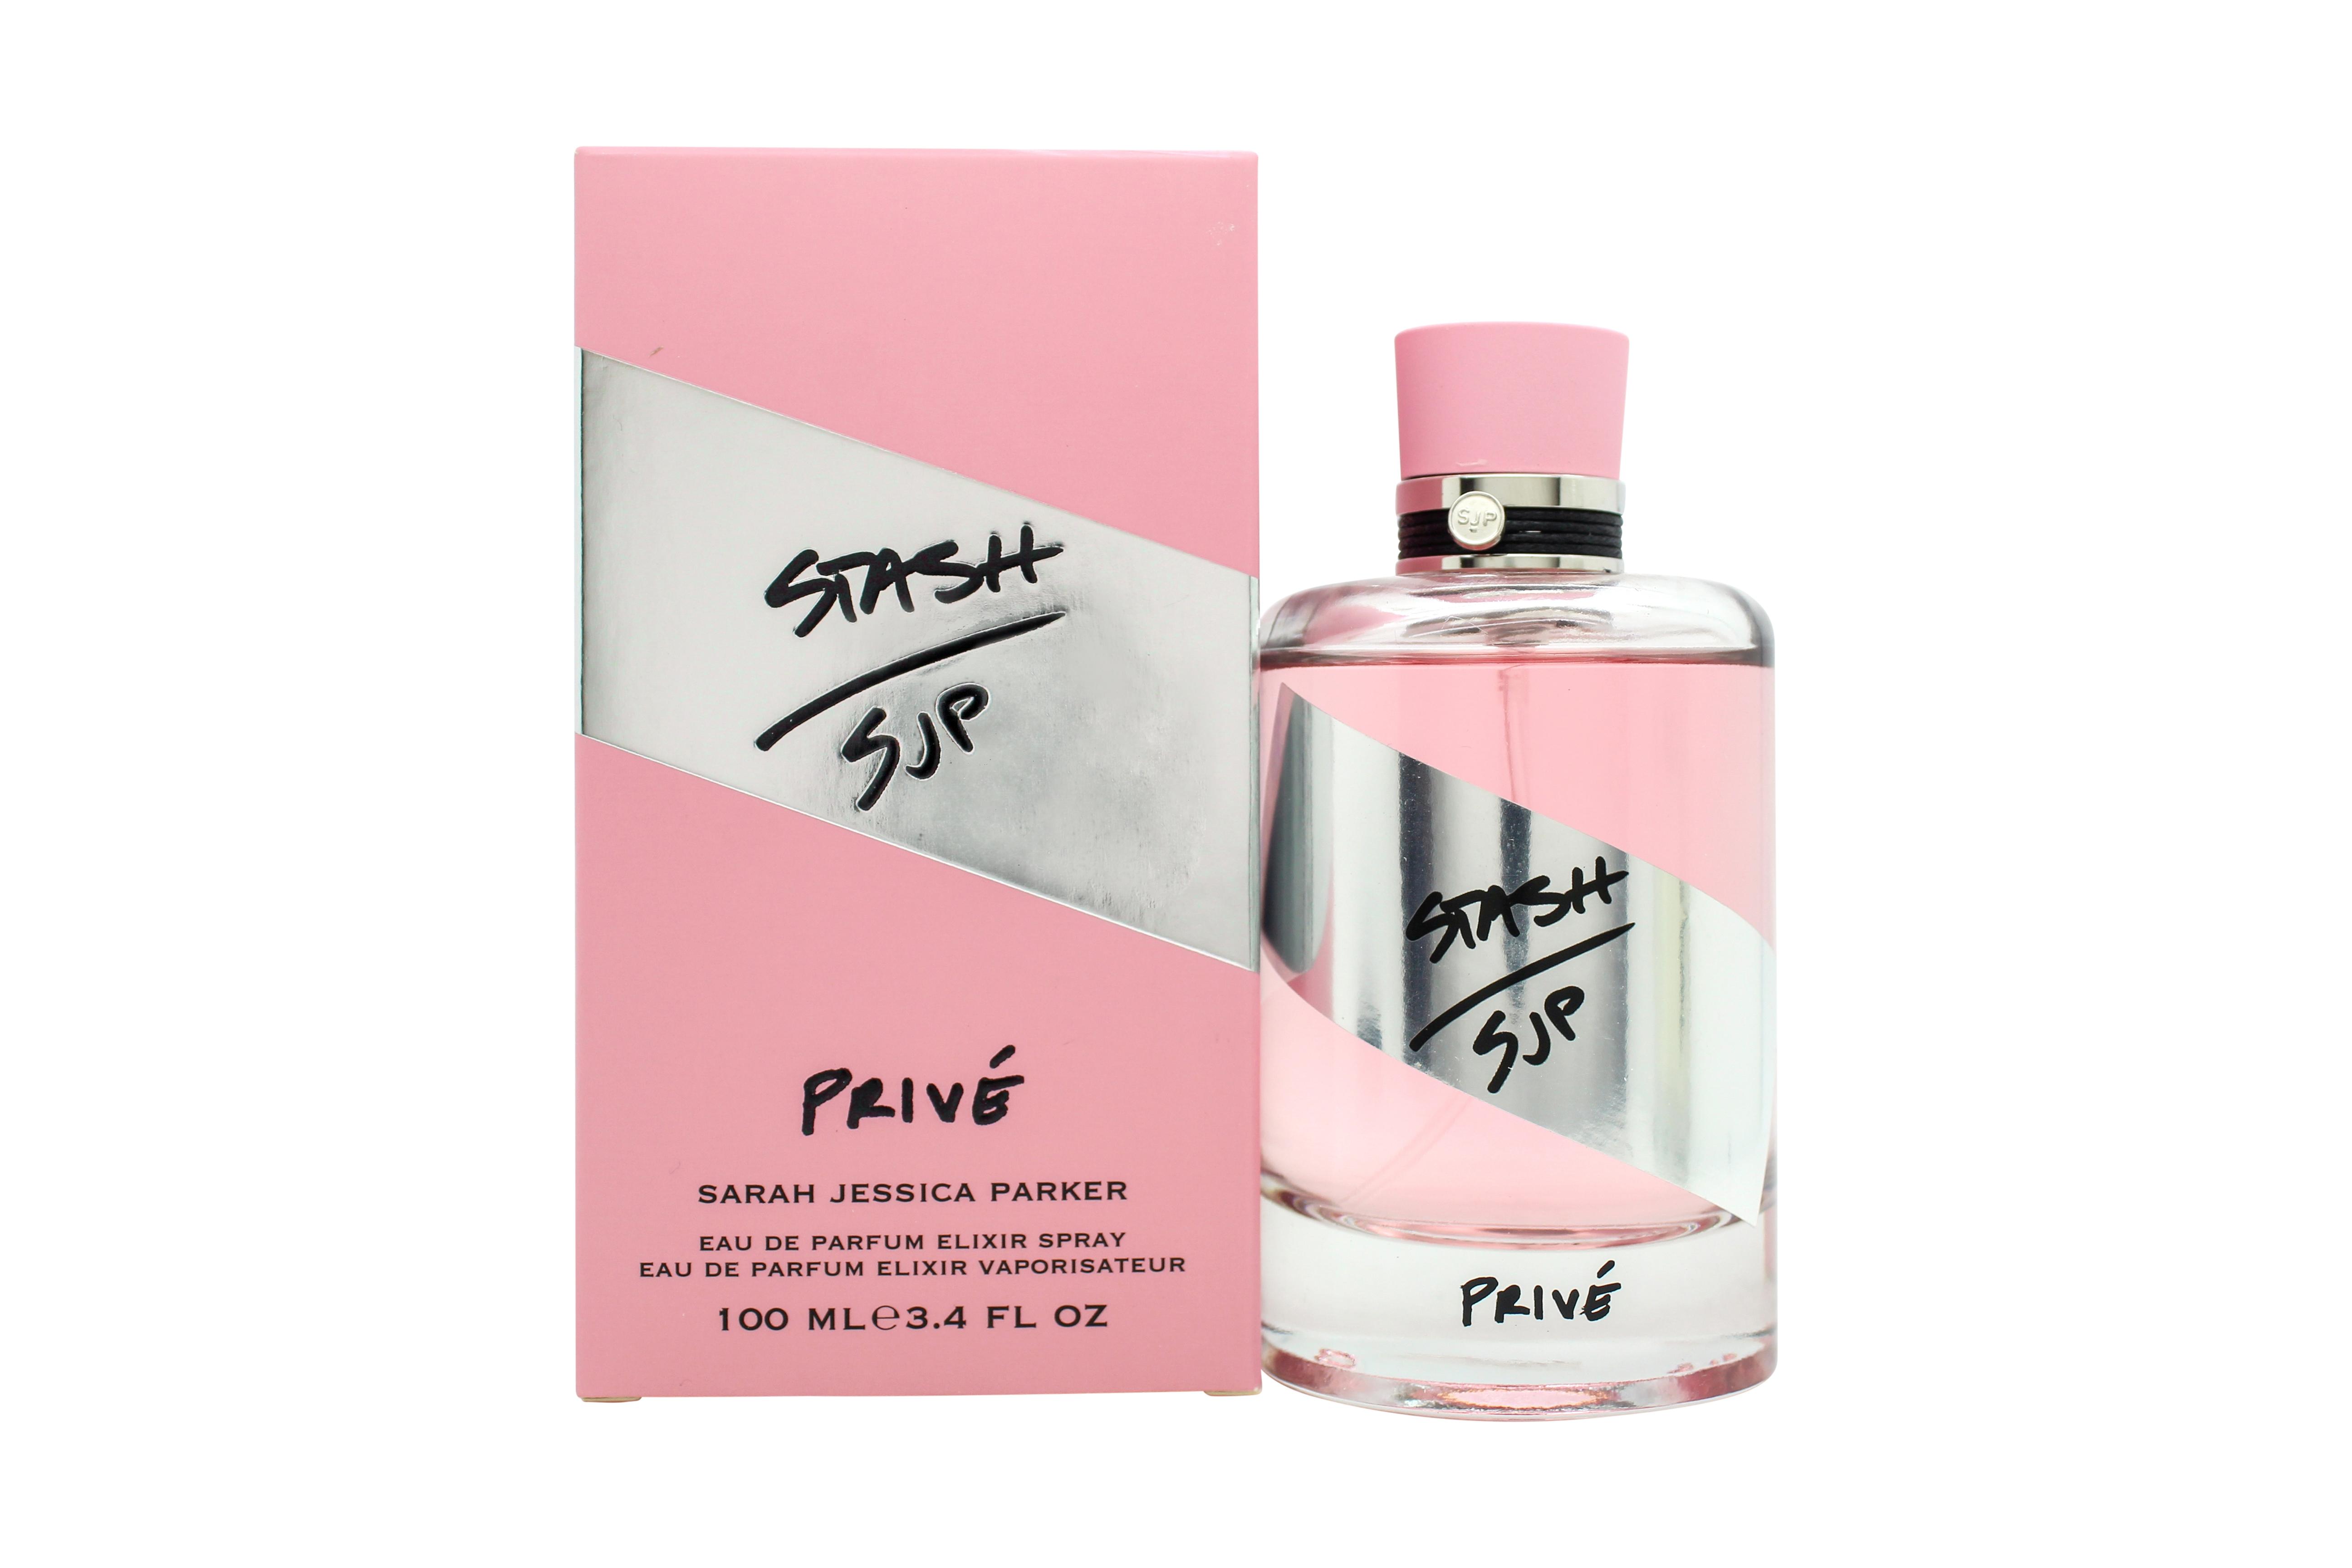 Sarah Jessica Parker Stash Prive Eau de Parfum 100ml Spray